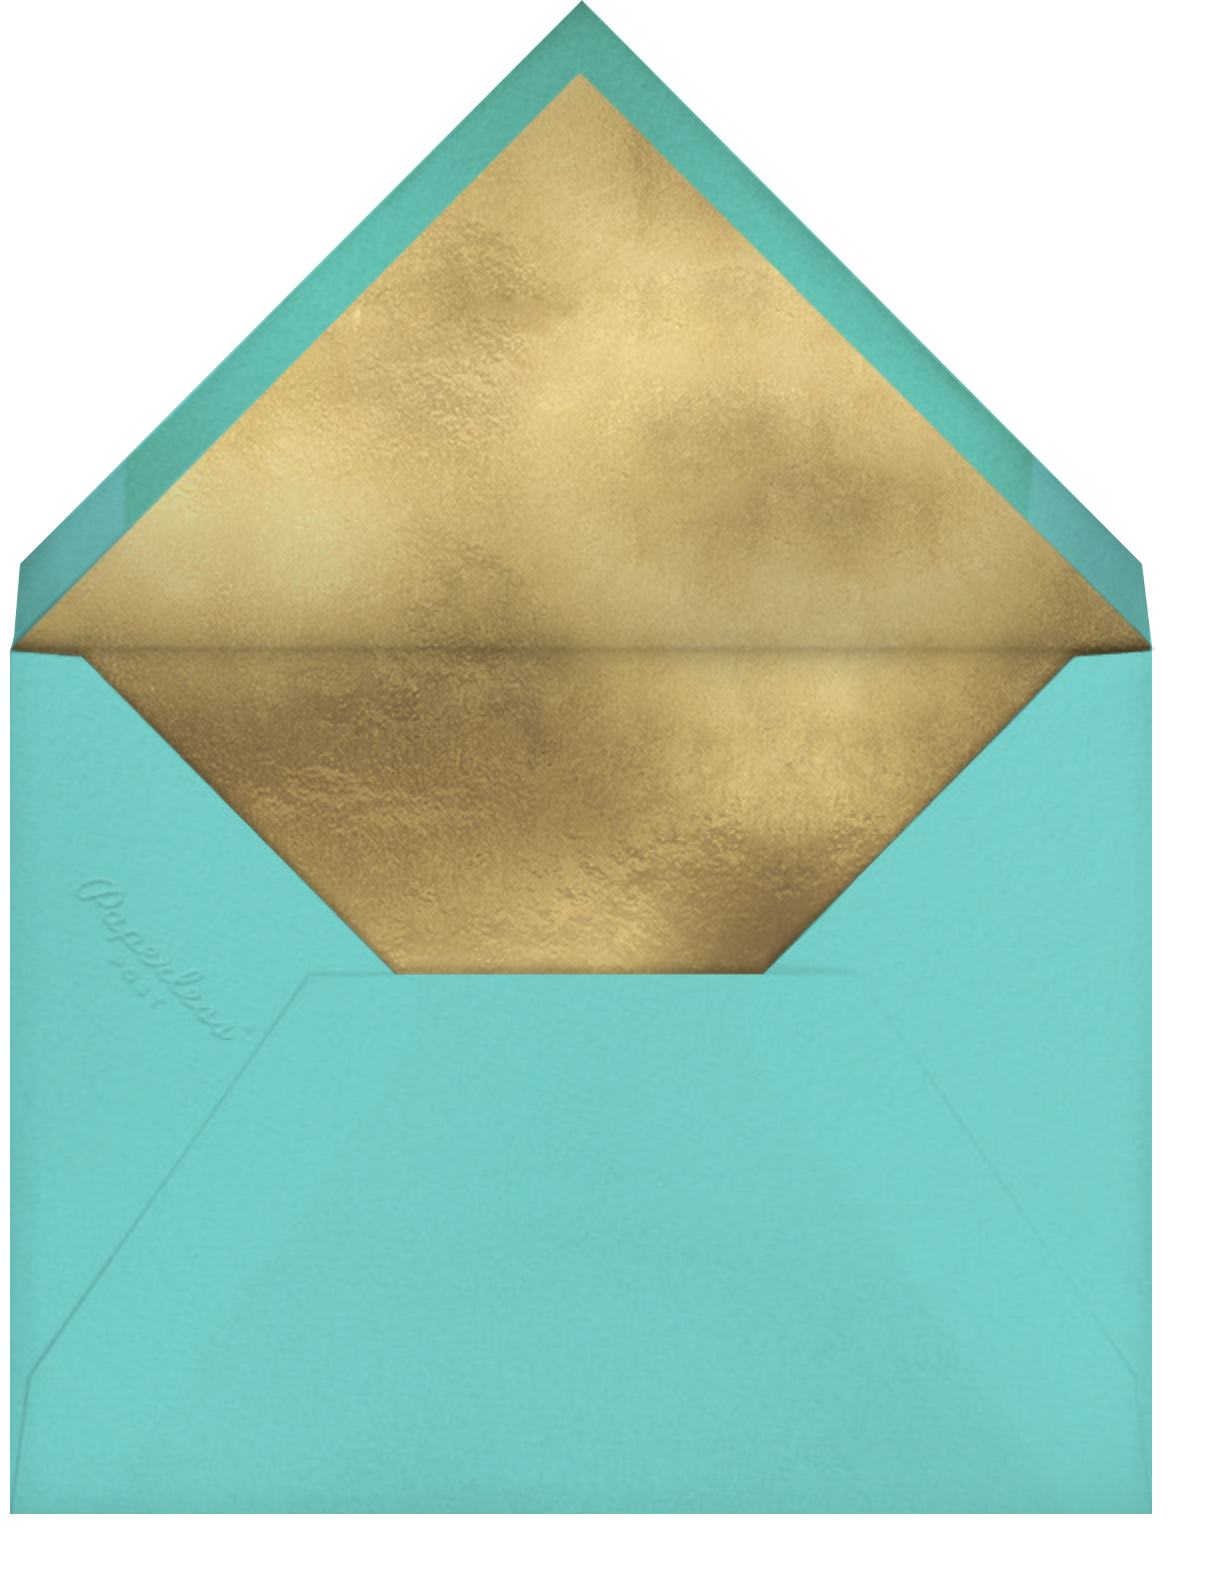 Hermoso Vestido - Tiffany - Paperless Post - Envelope